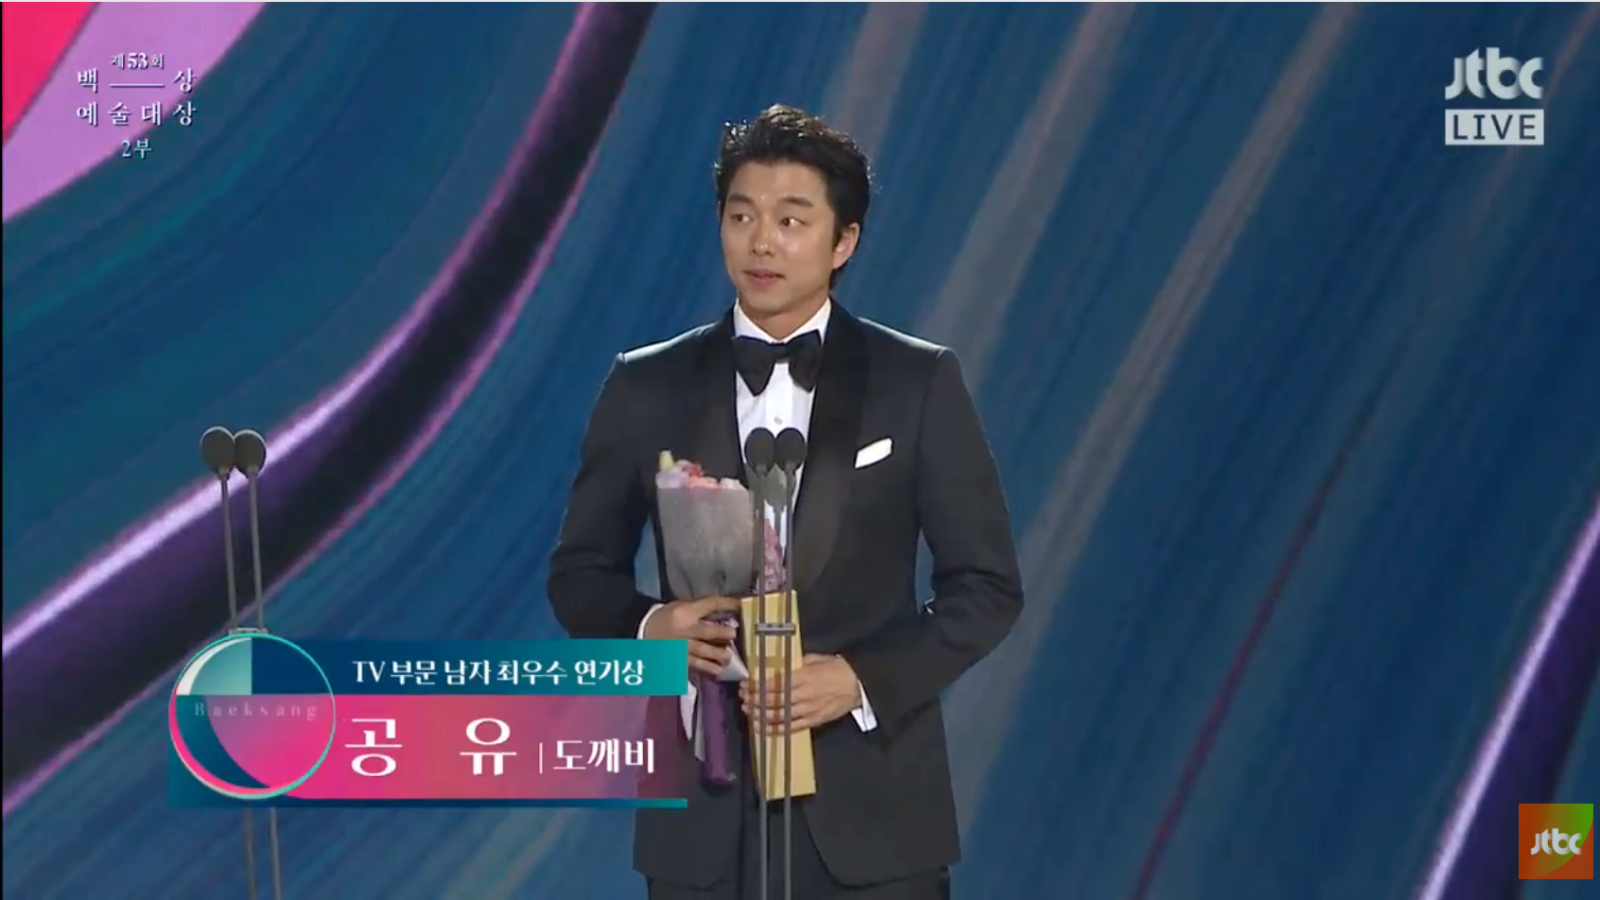 
Gong Yoo xúc động khi nhận được giải thưởng danh giá.